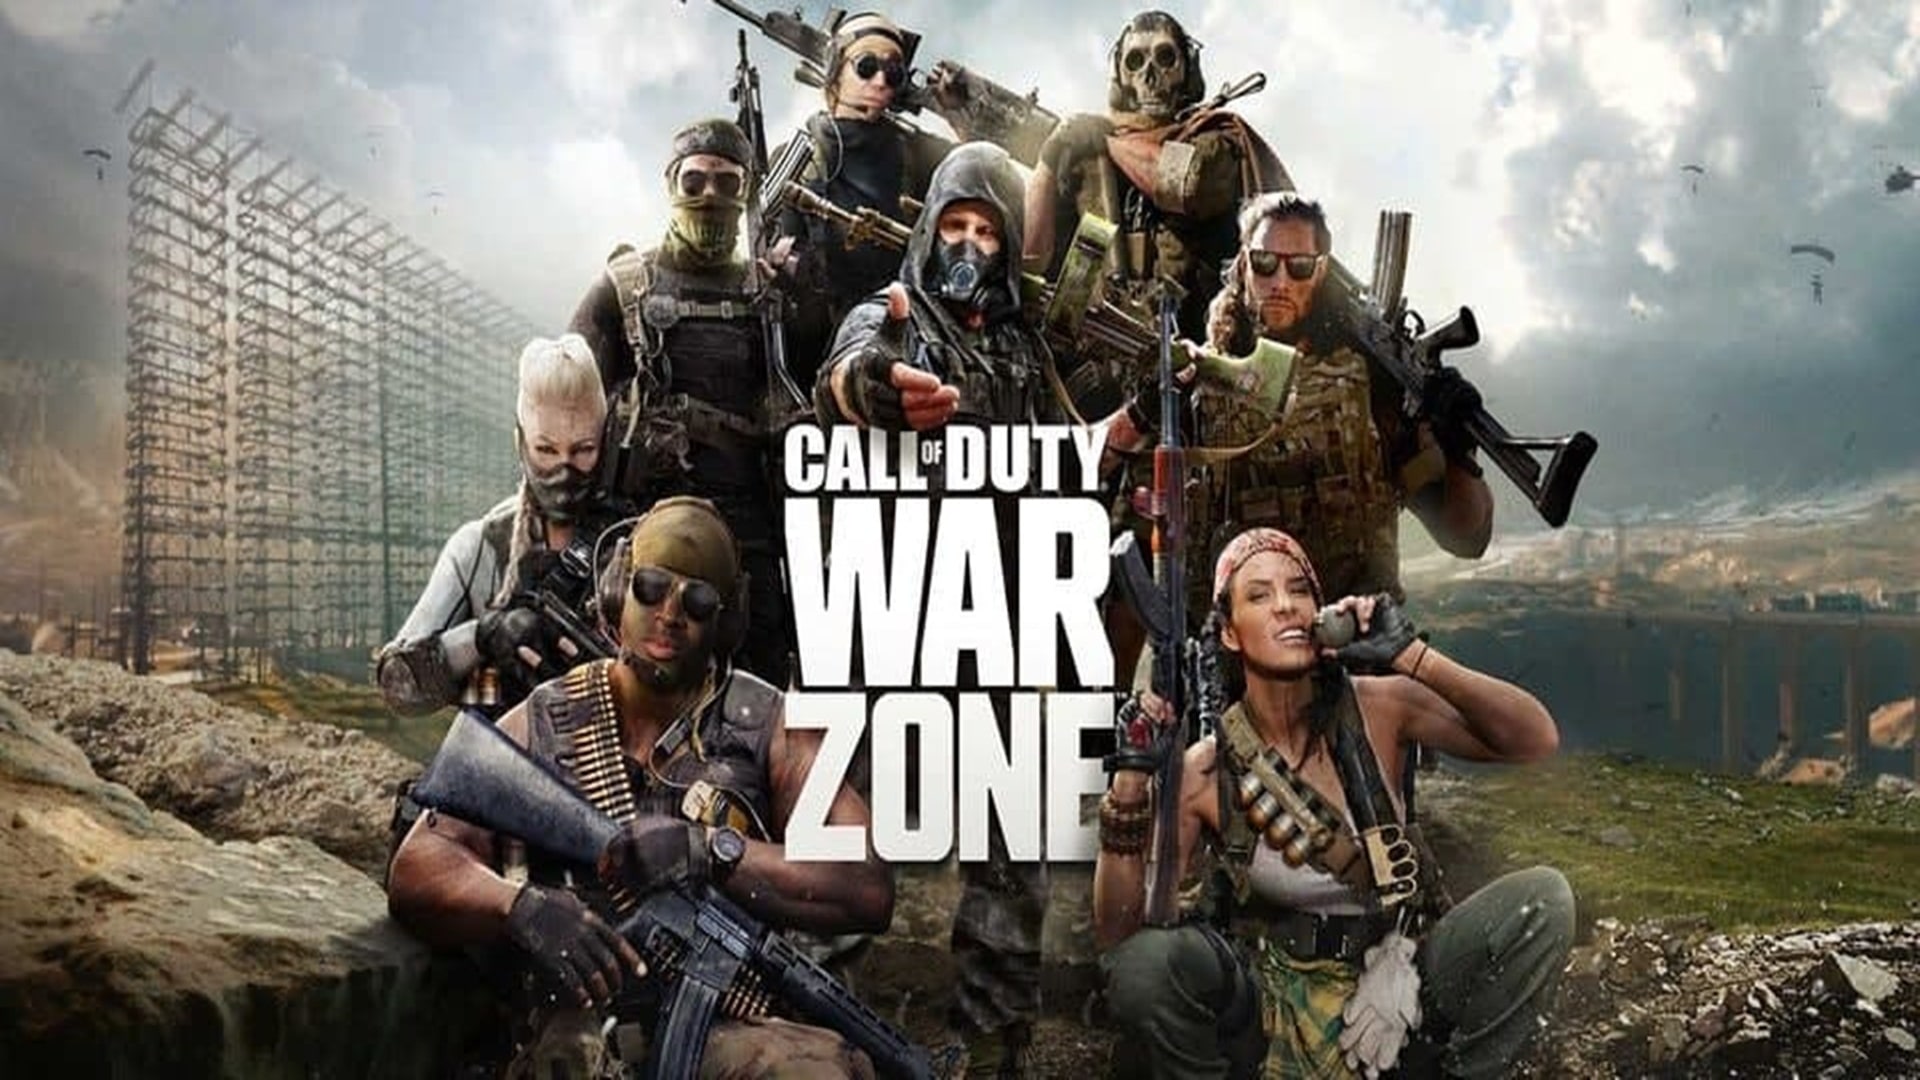 Call of Duty: Warzone: Las placas de armadura parecen haber sido nerfeadas en secreto, GamersRD